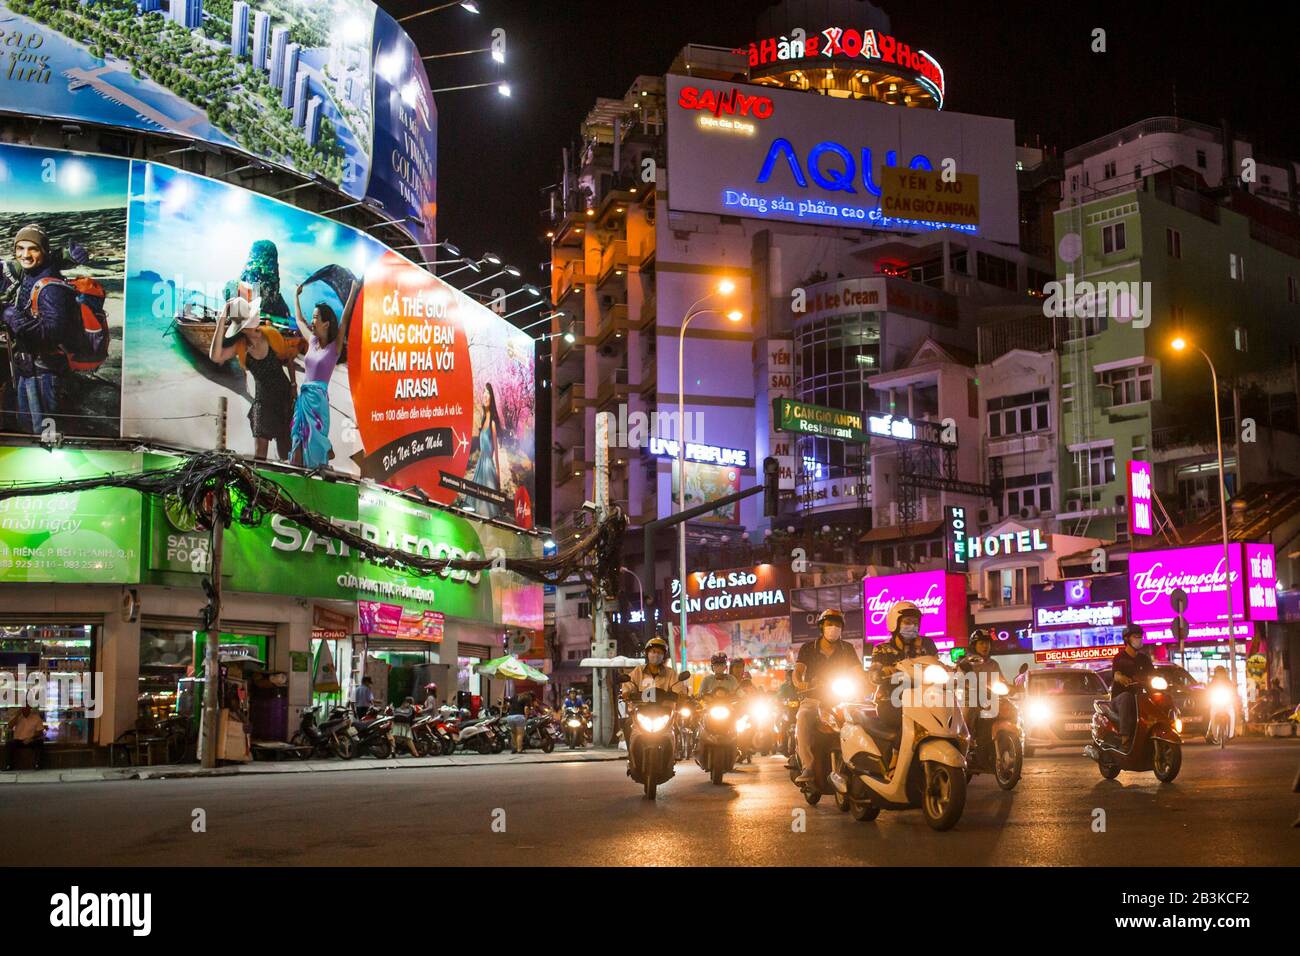 Ho Chi Minh City, Vietnam - October 31, 2016: Traffic during the evening hours in Ho Chi minh City, Vietnam Stock Photo